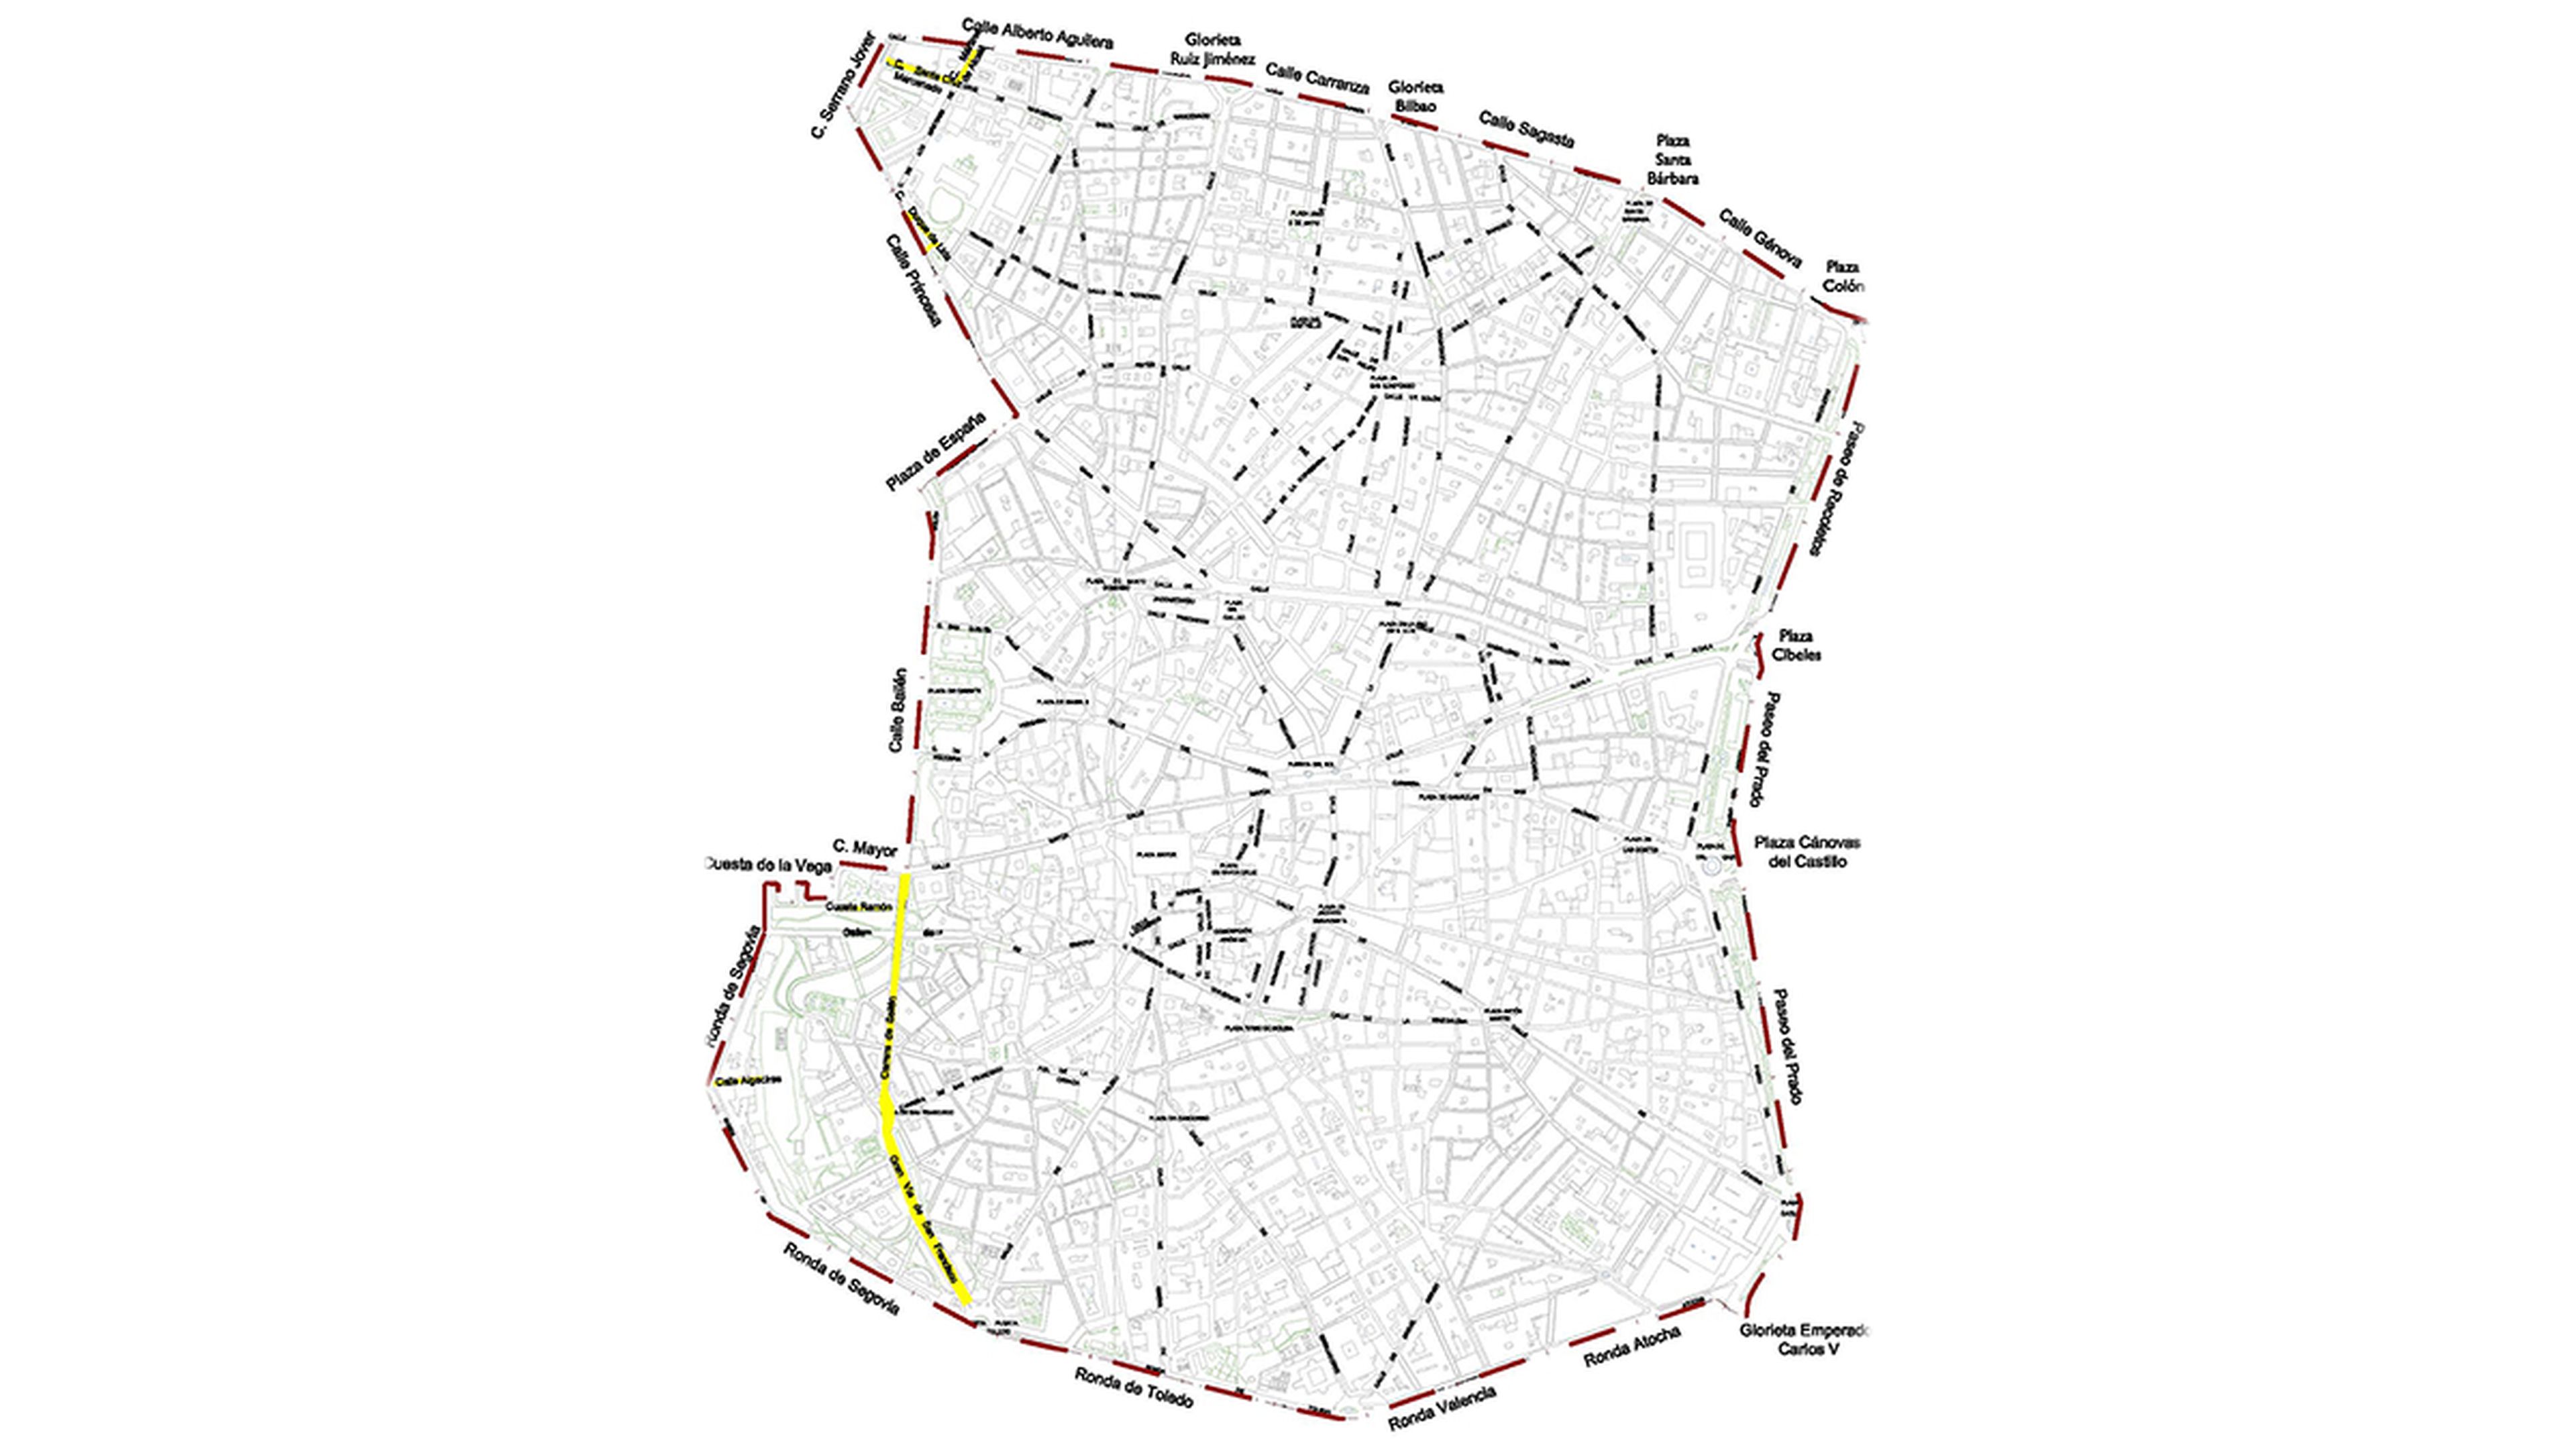 Mapa de la zona APR de Madrid con Madrid Central